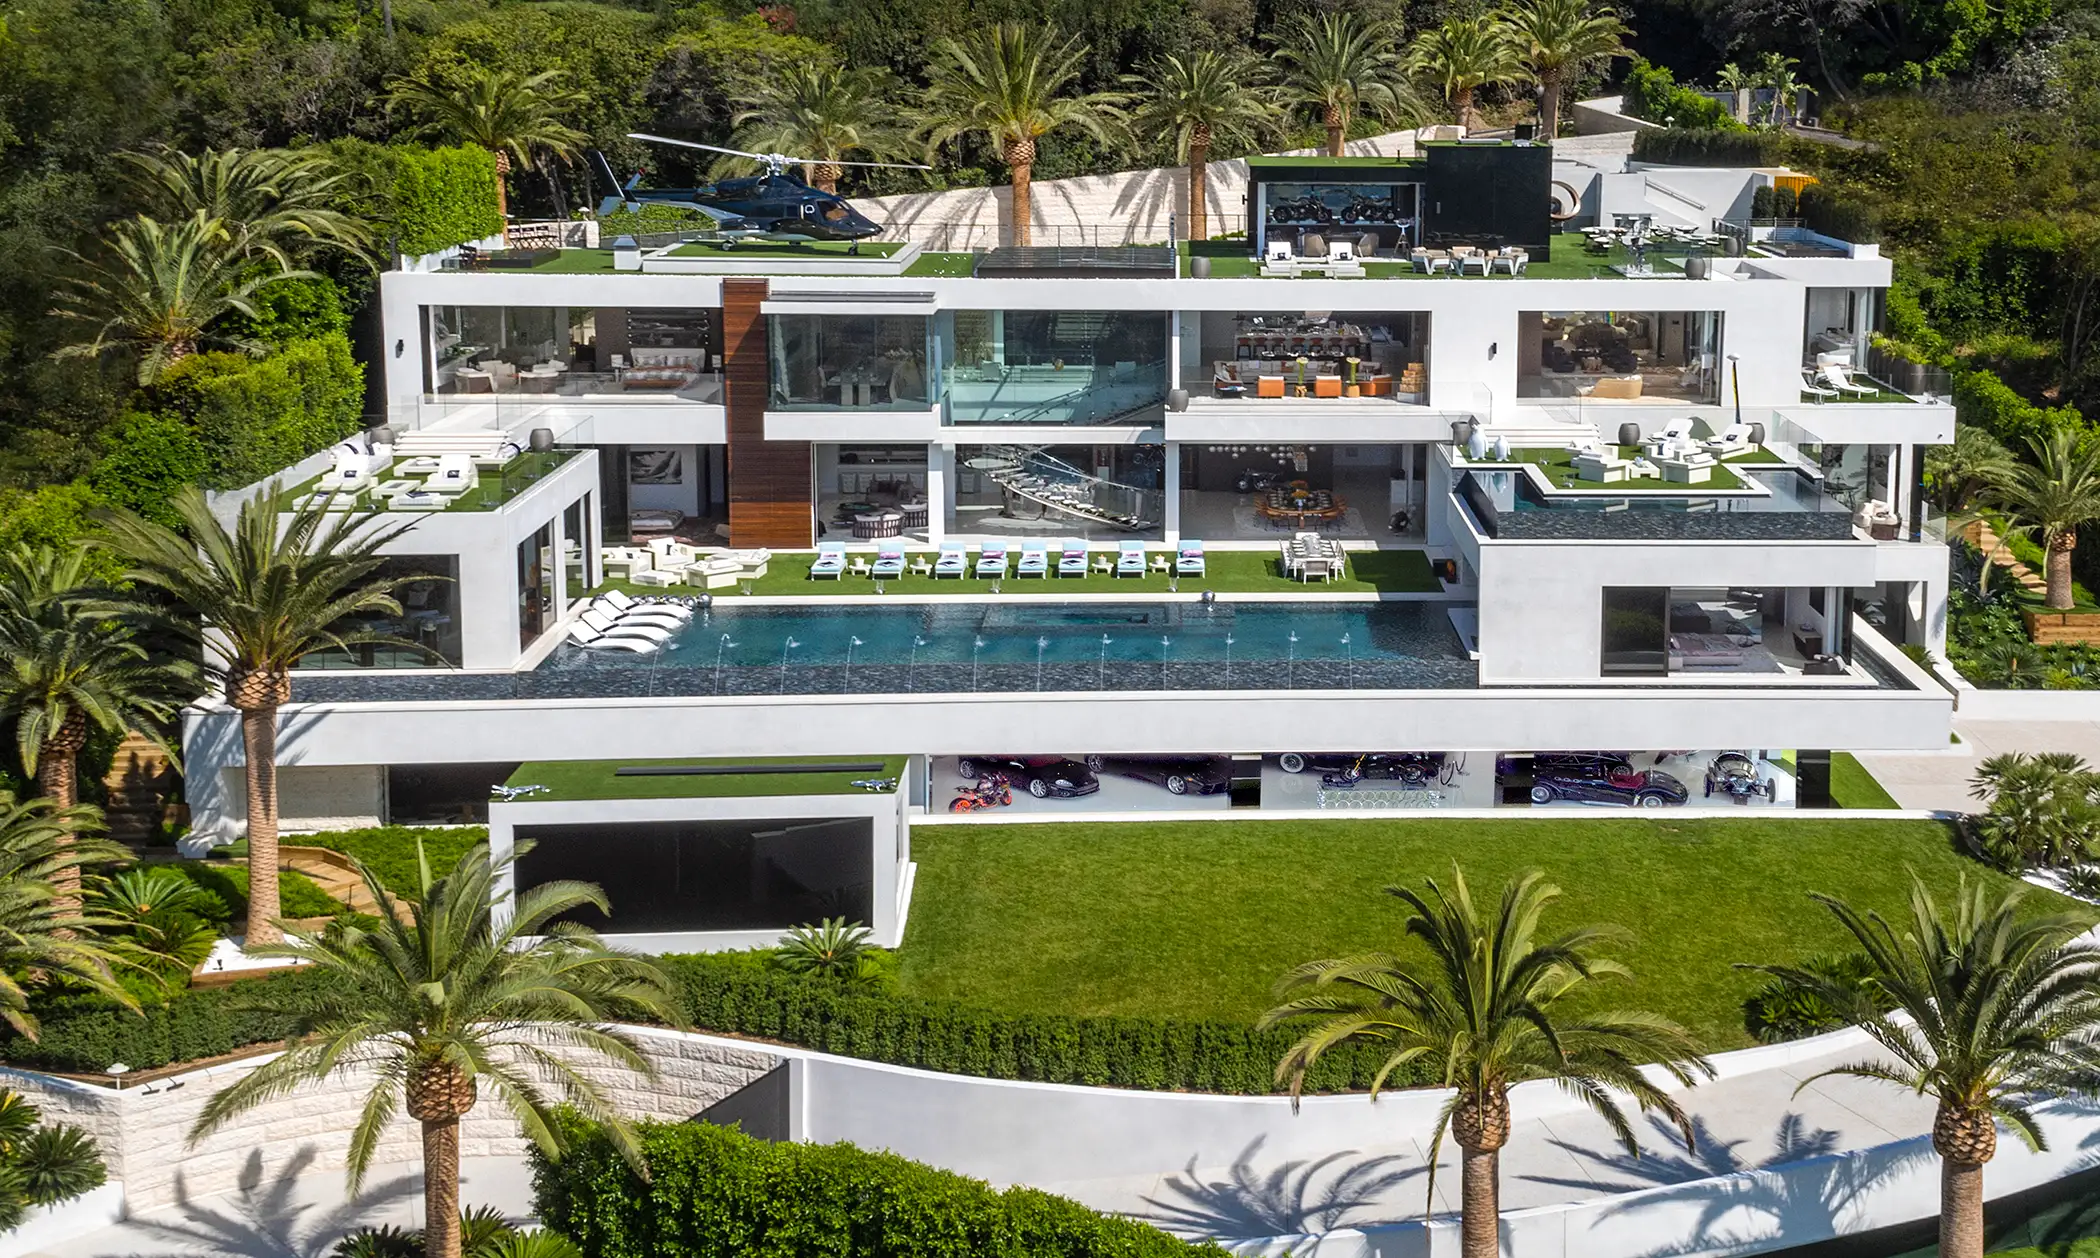 $250 Million Home Developed by Bruce Makowsky